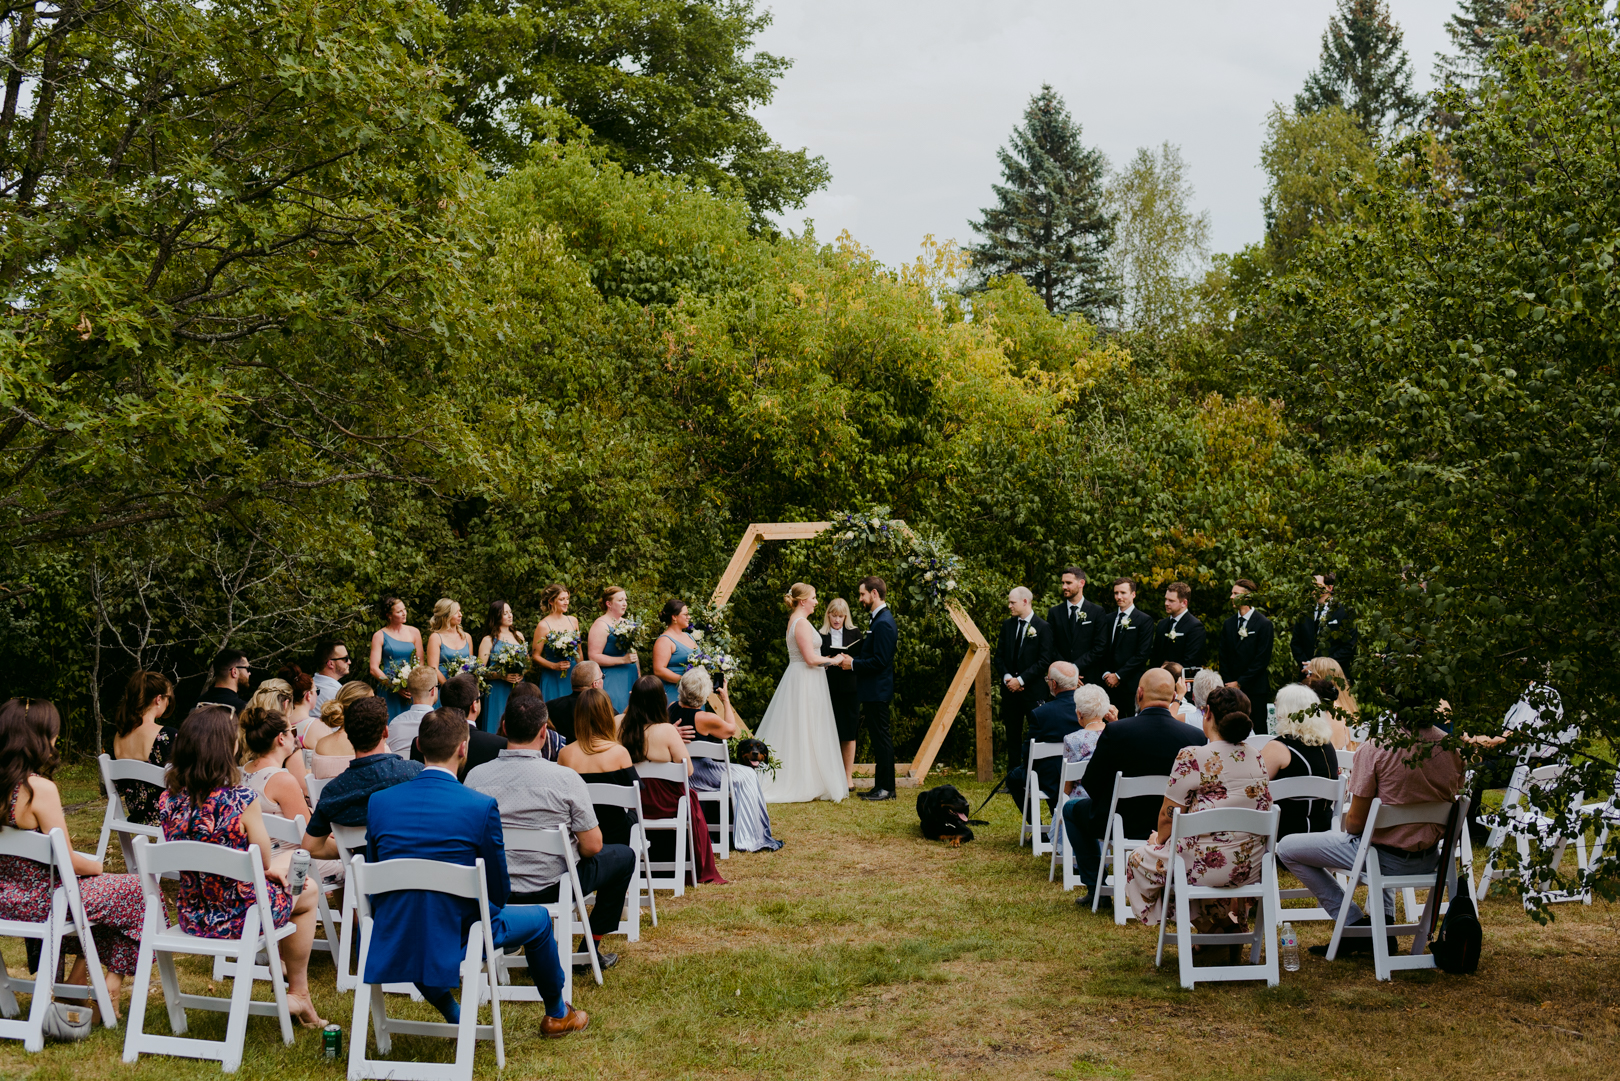 wooden hexagon at outdoor wedding ceremony